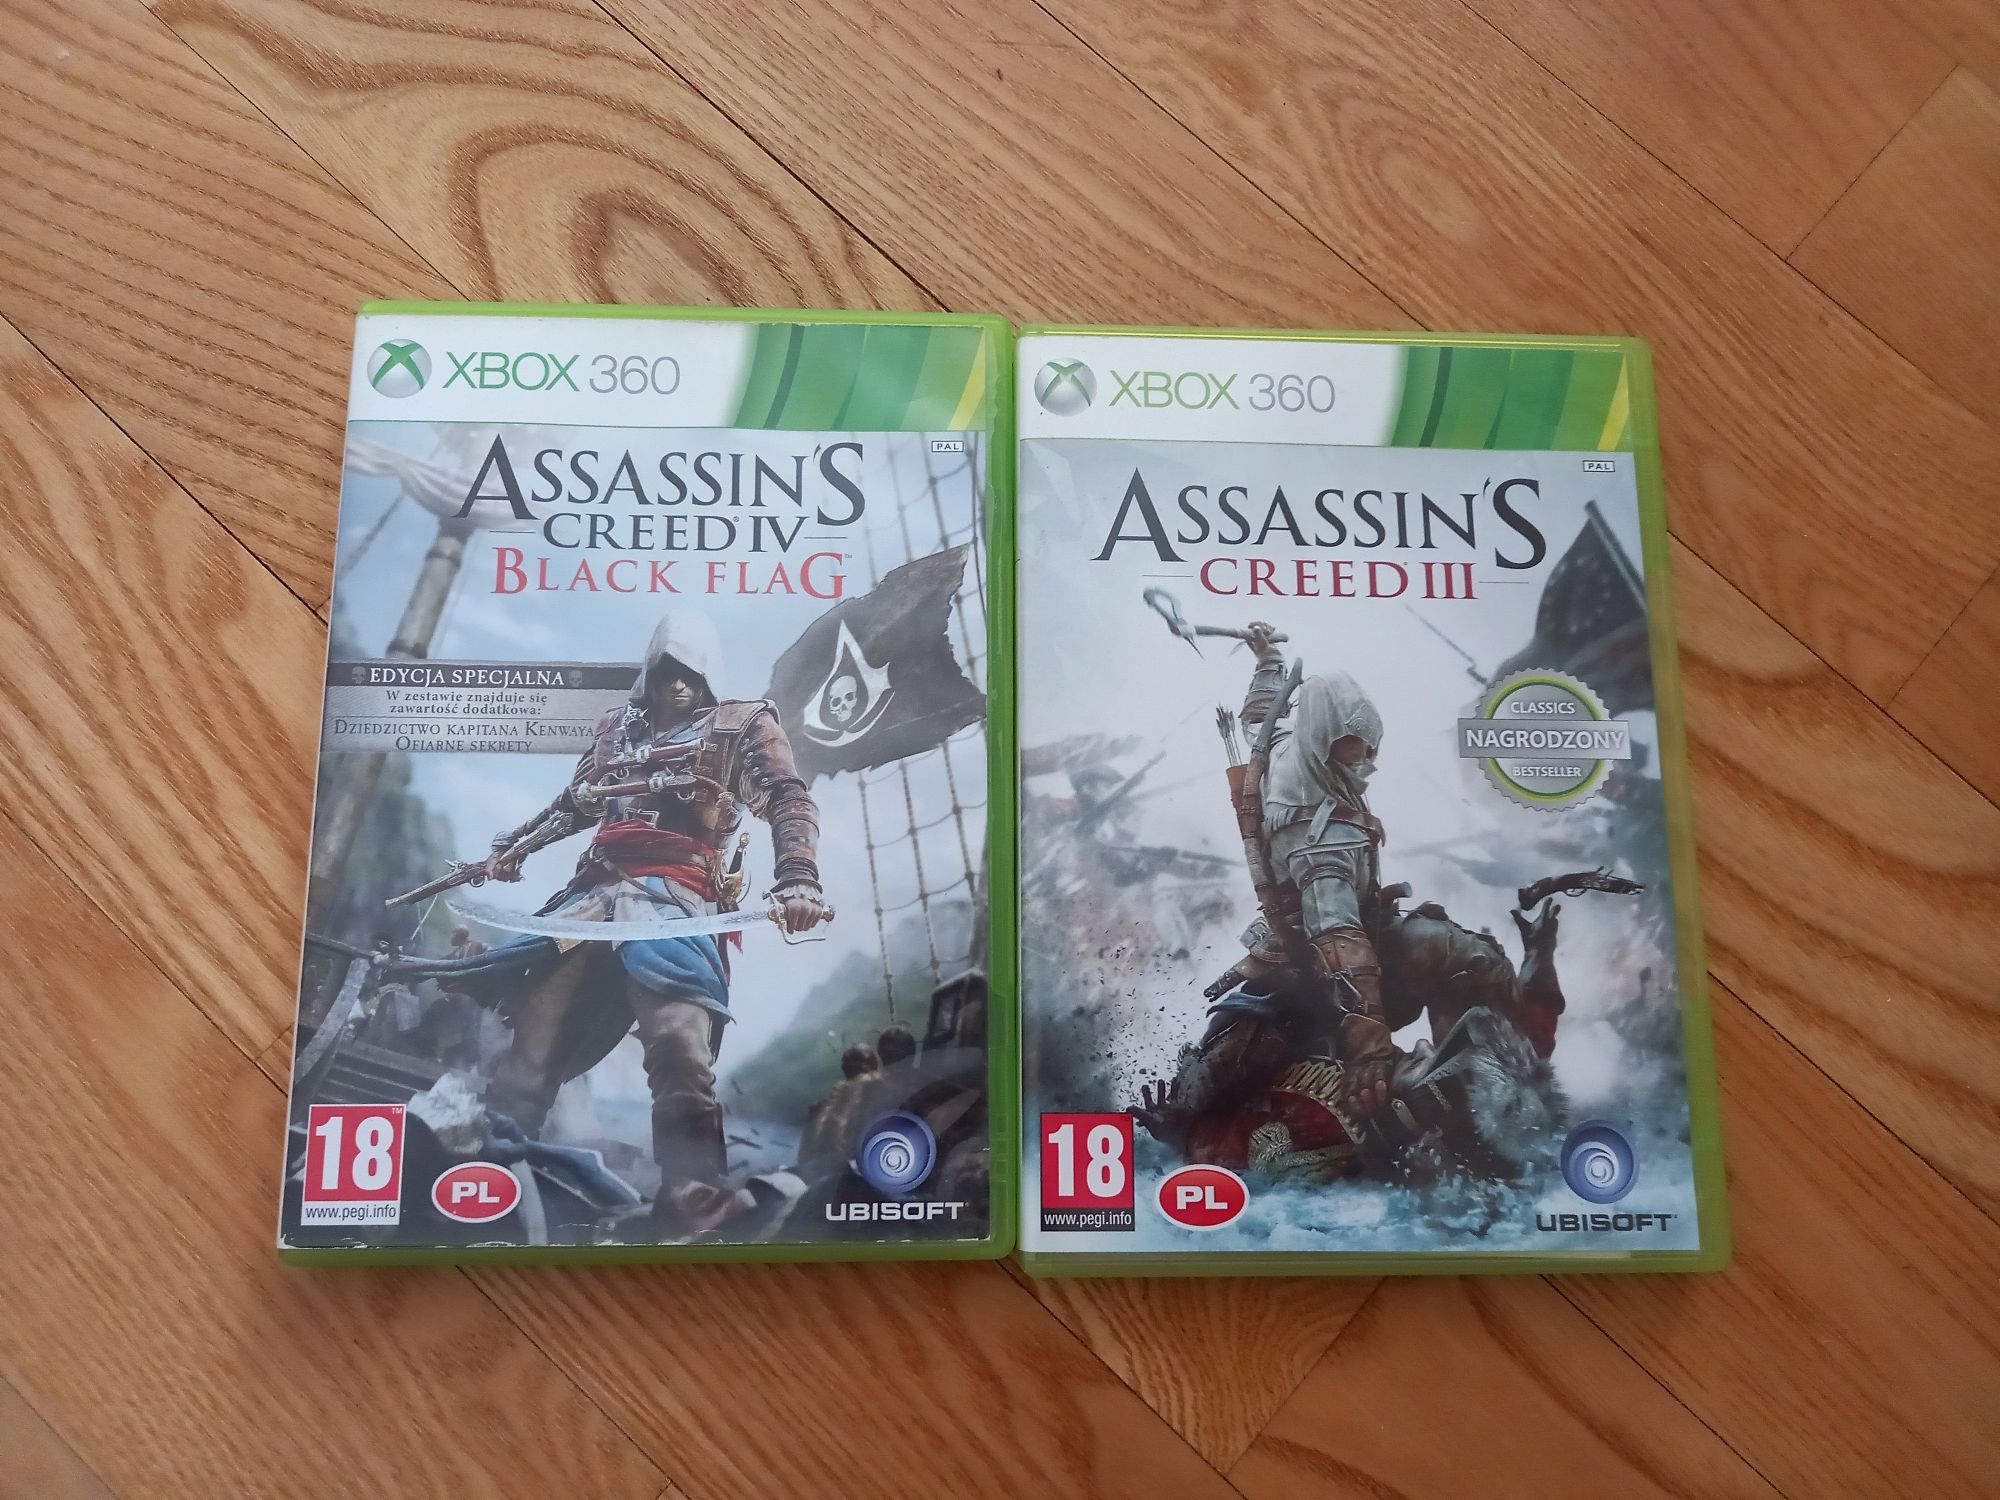 Gry na XBOX 360 Assassin's Creed  III i IV polska wersja
- Assassin's